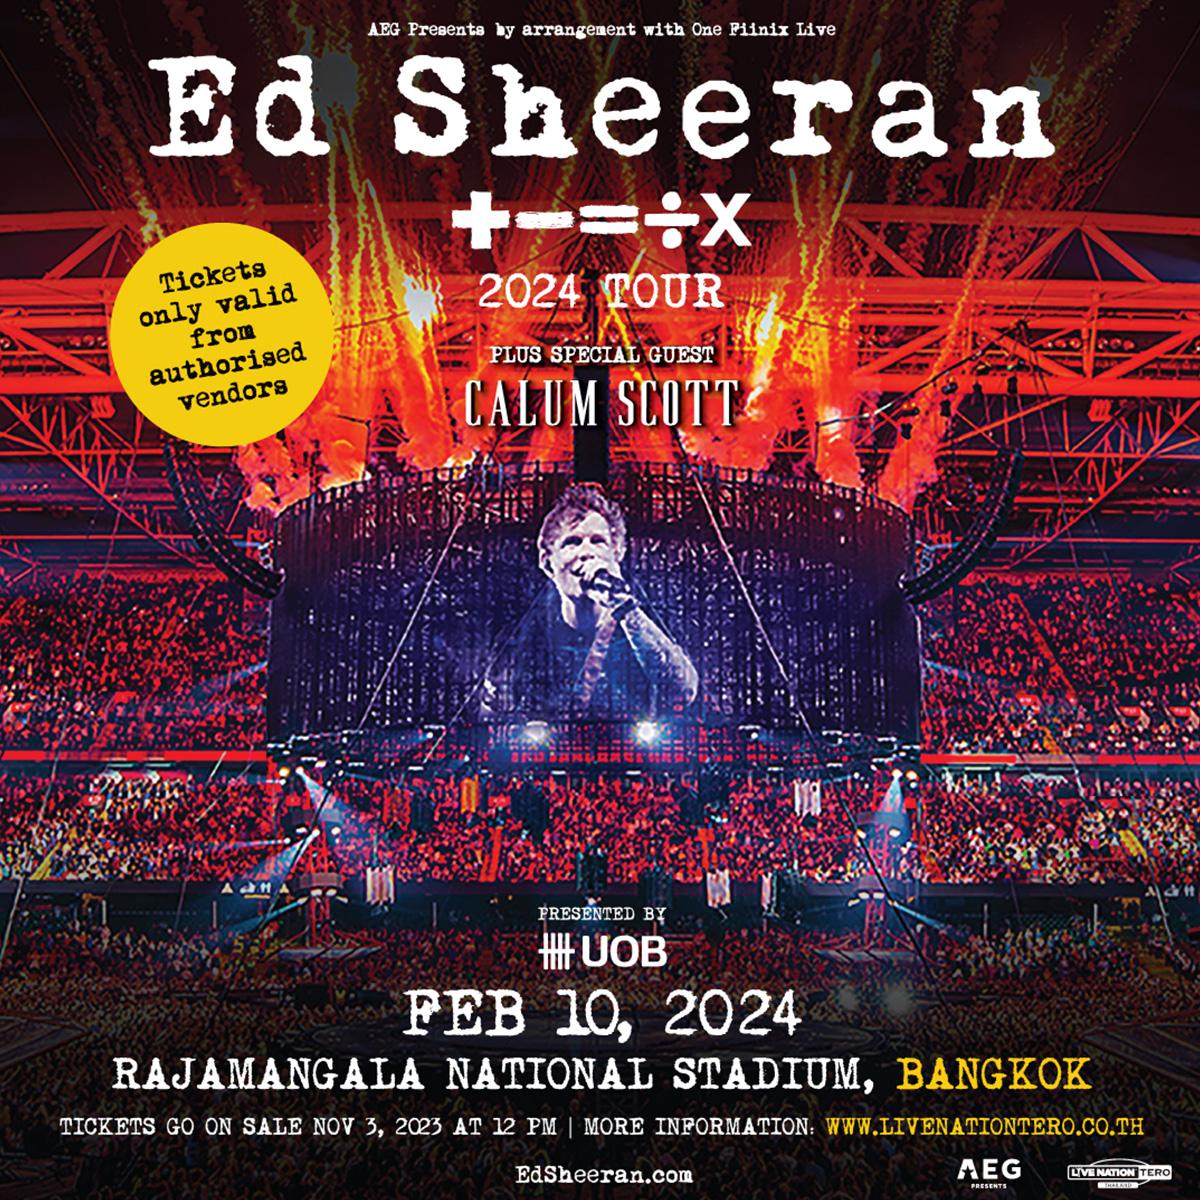 Ed-Sheeran-Mathematics-Tour-SPACEBAR-Photo_SQ02.jpg